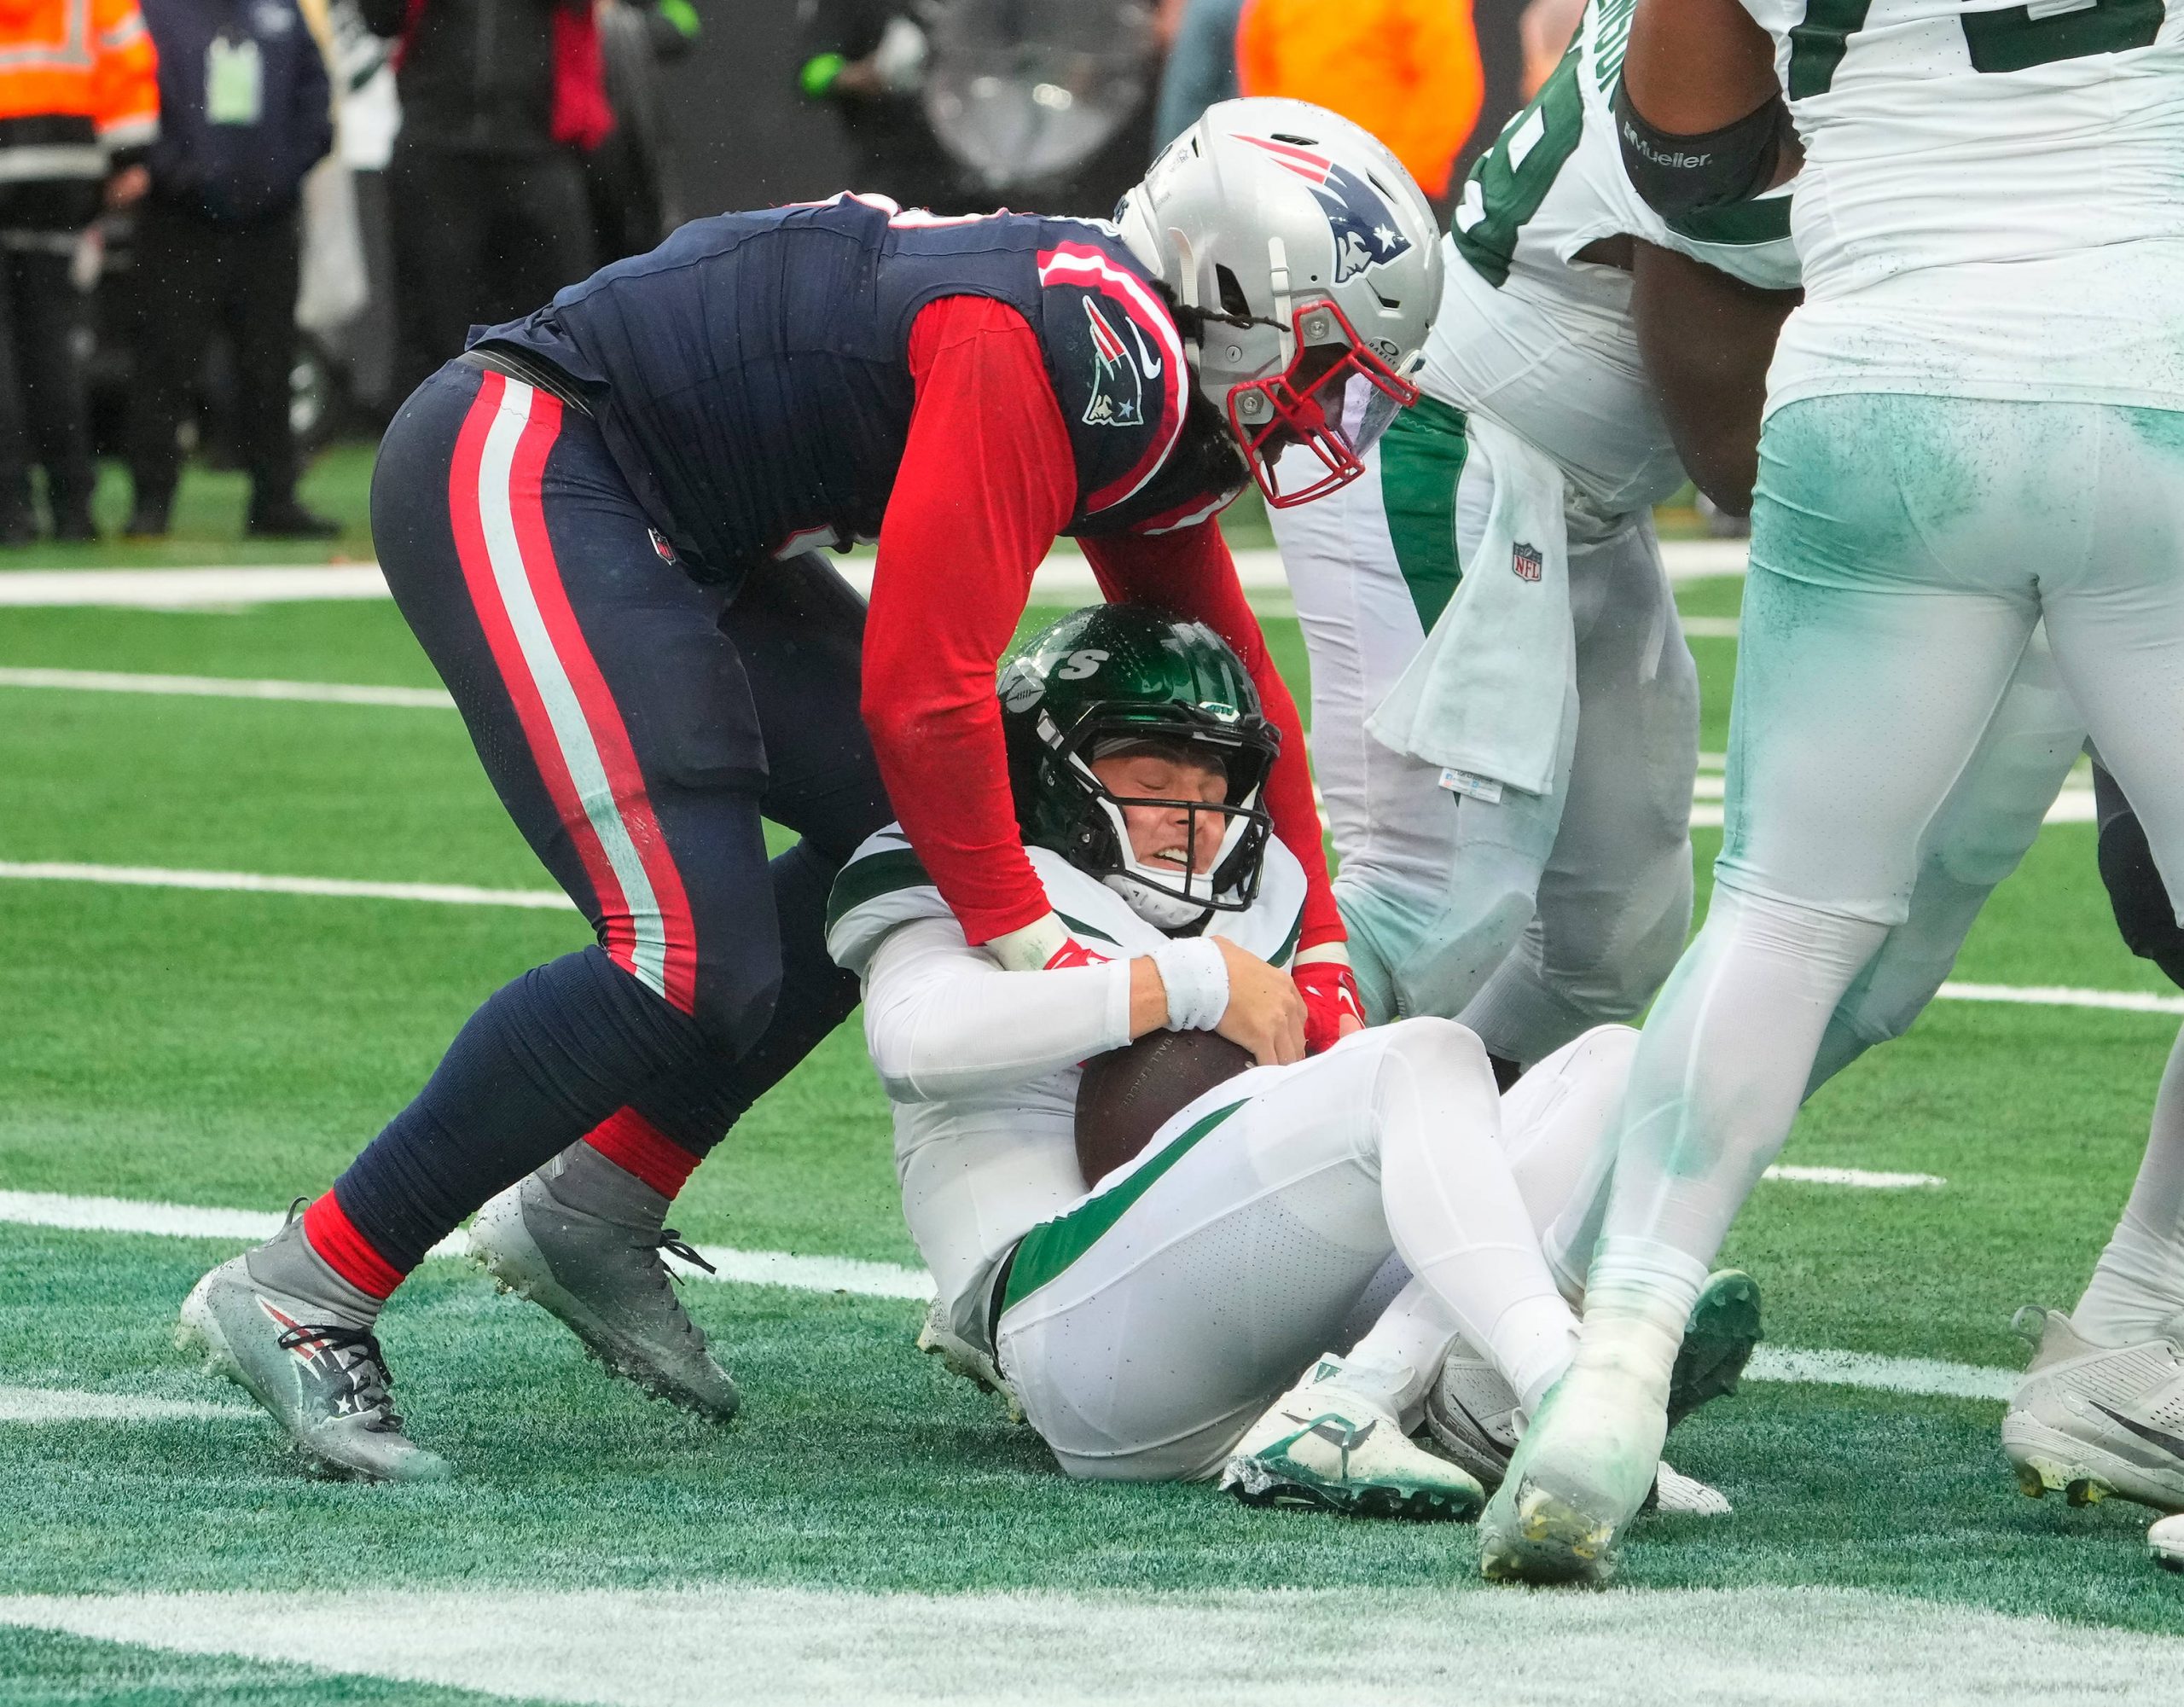 FootballR - NFL - Bei einer enttäuschenden Niederlage gegen die Patriots wird Zach Wilson von einem anderen Spieler angegriffen.